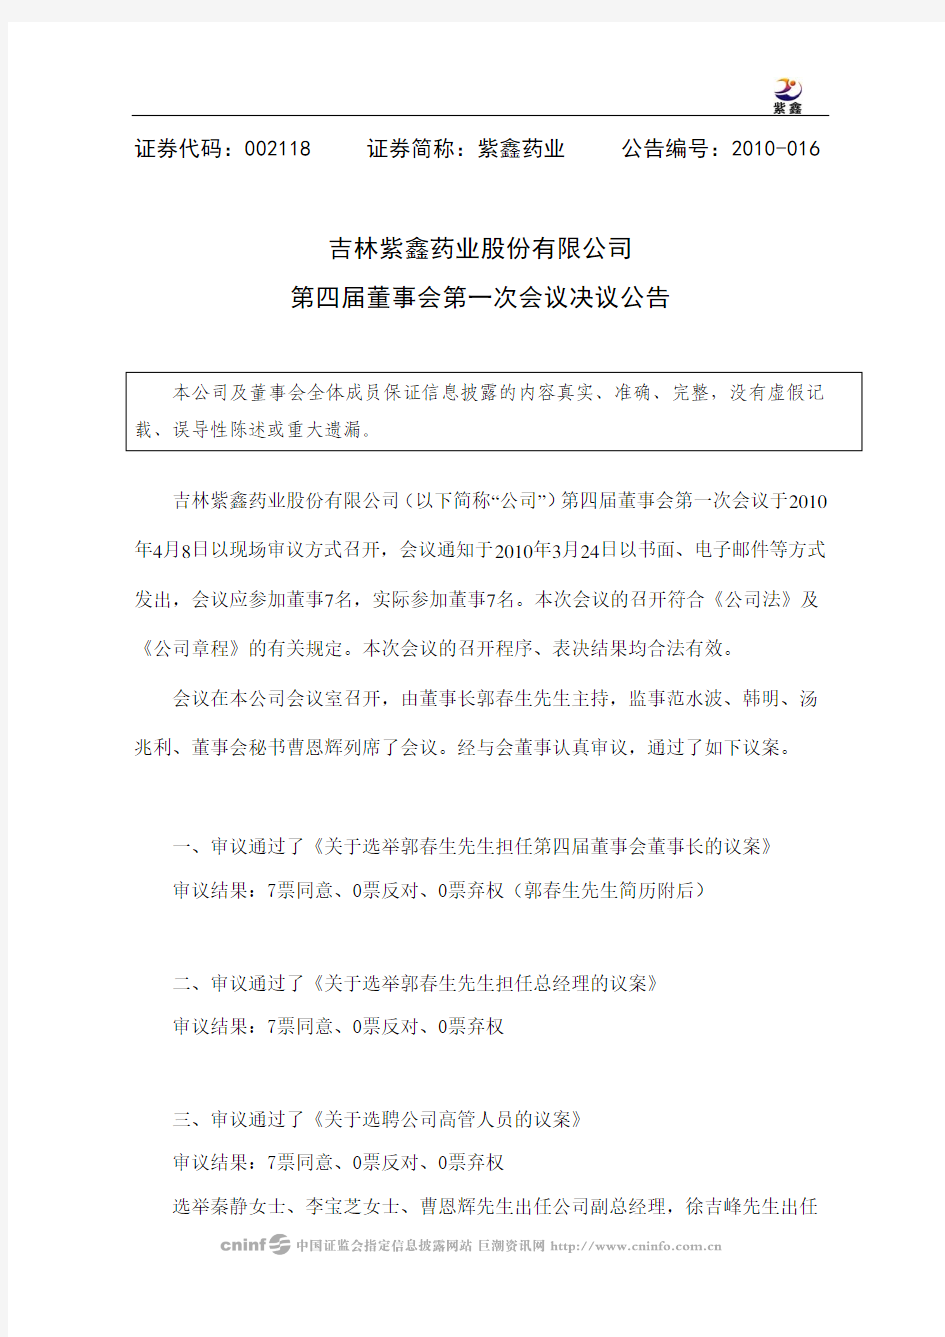 吉林紫鑫药业股份有限公司第四届董事会第一次会议决议公告